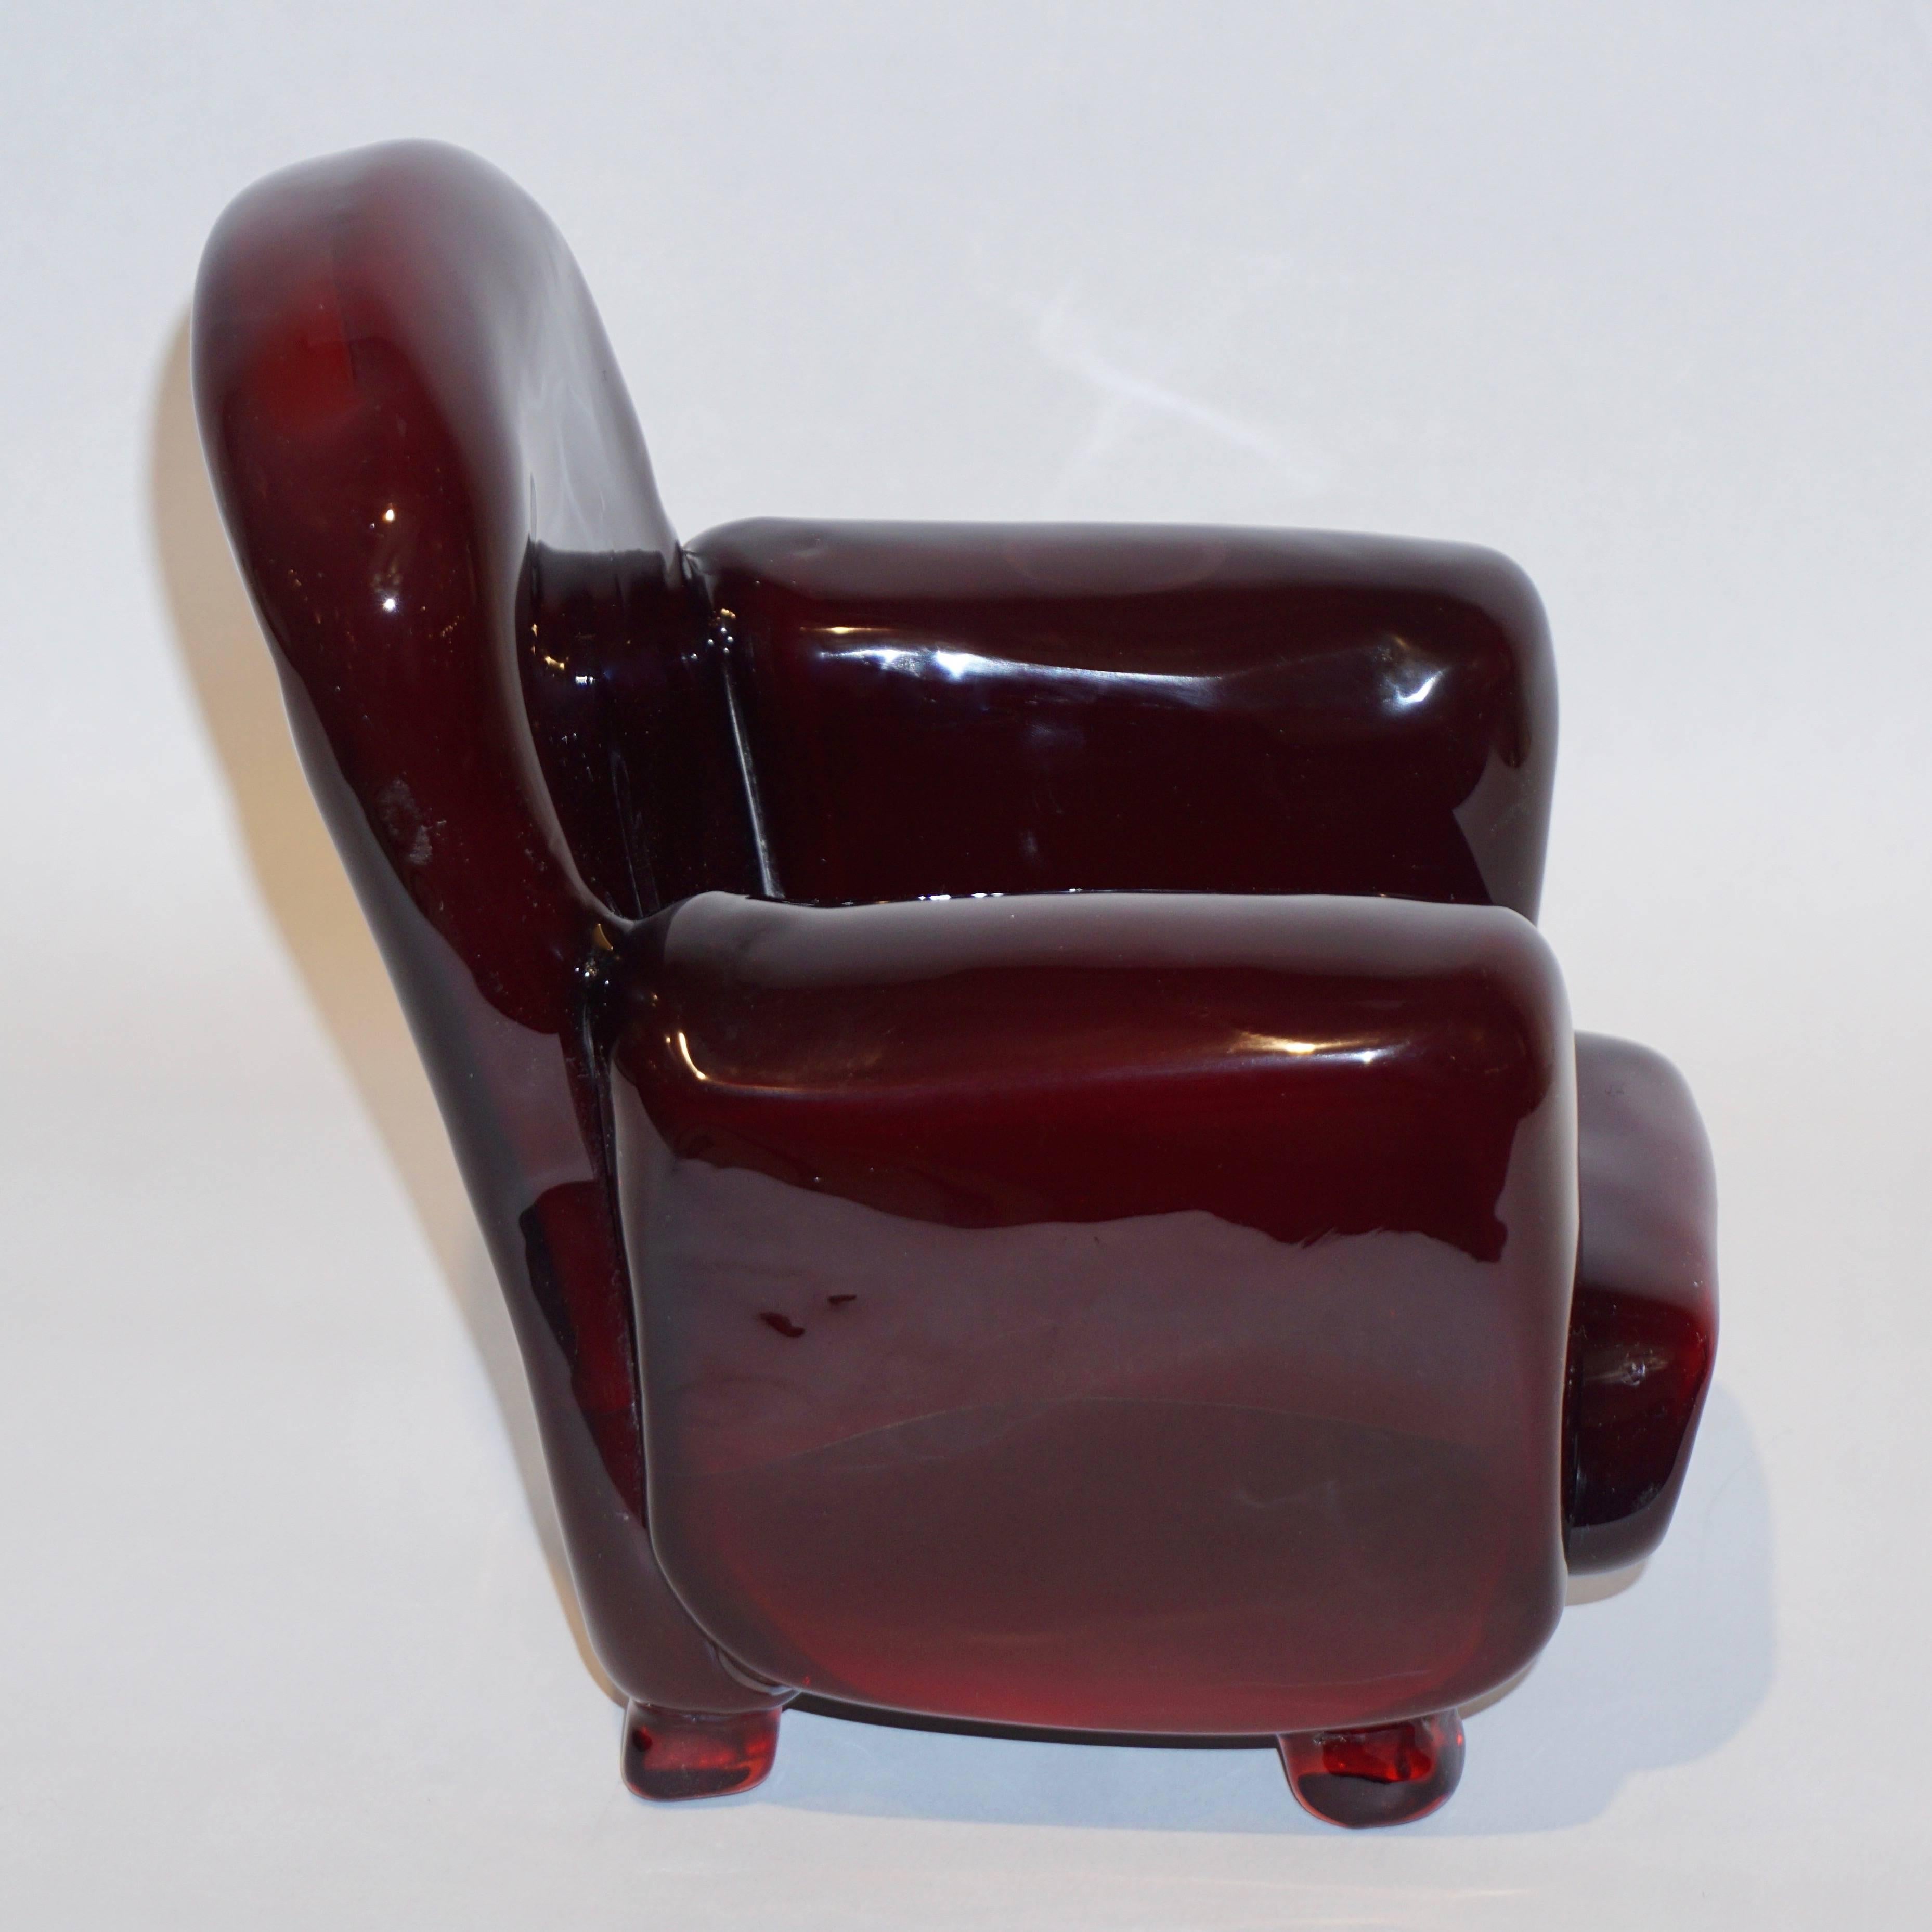 Ce ravissant fauteuil en taille miniature est une œuvre d'art organique vintage, une sculpture en verre d'art soufflé de Murano, signée par Pino Signoretto, dans une couleur rouge vin attrayante. Un objet charmant, joliment détaillé. Un bras